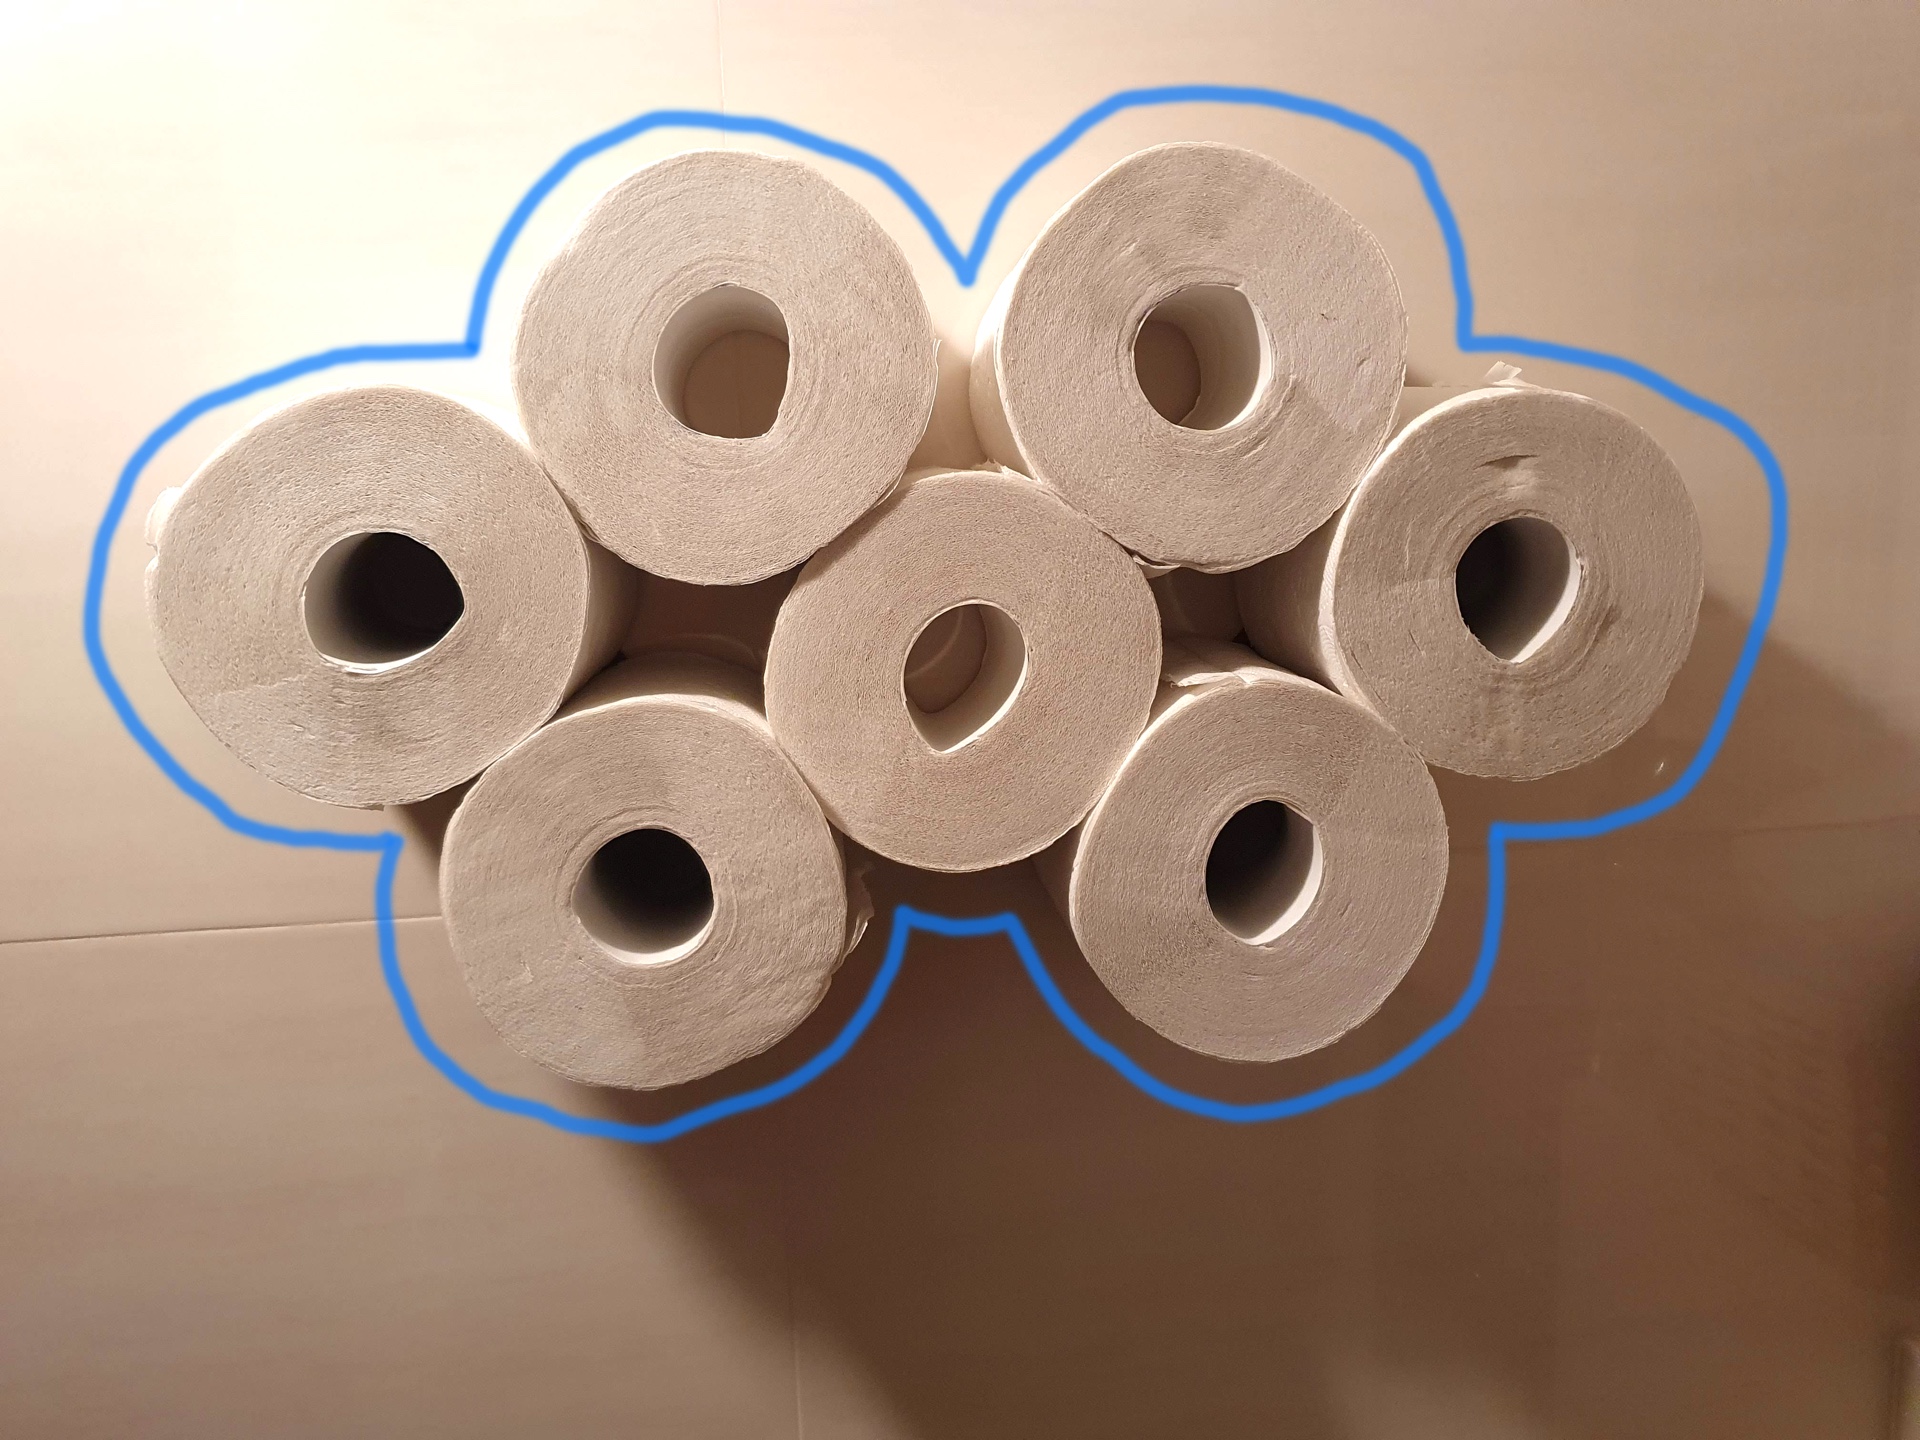 Toilet paper cloud